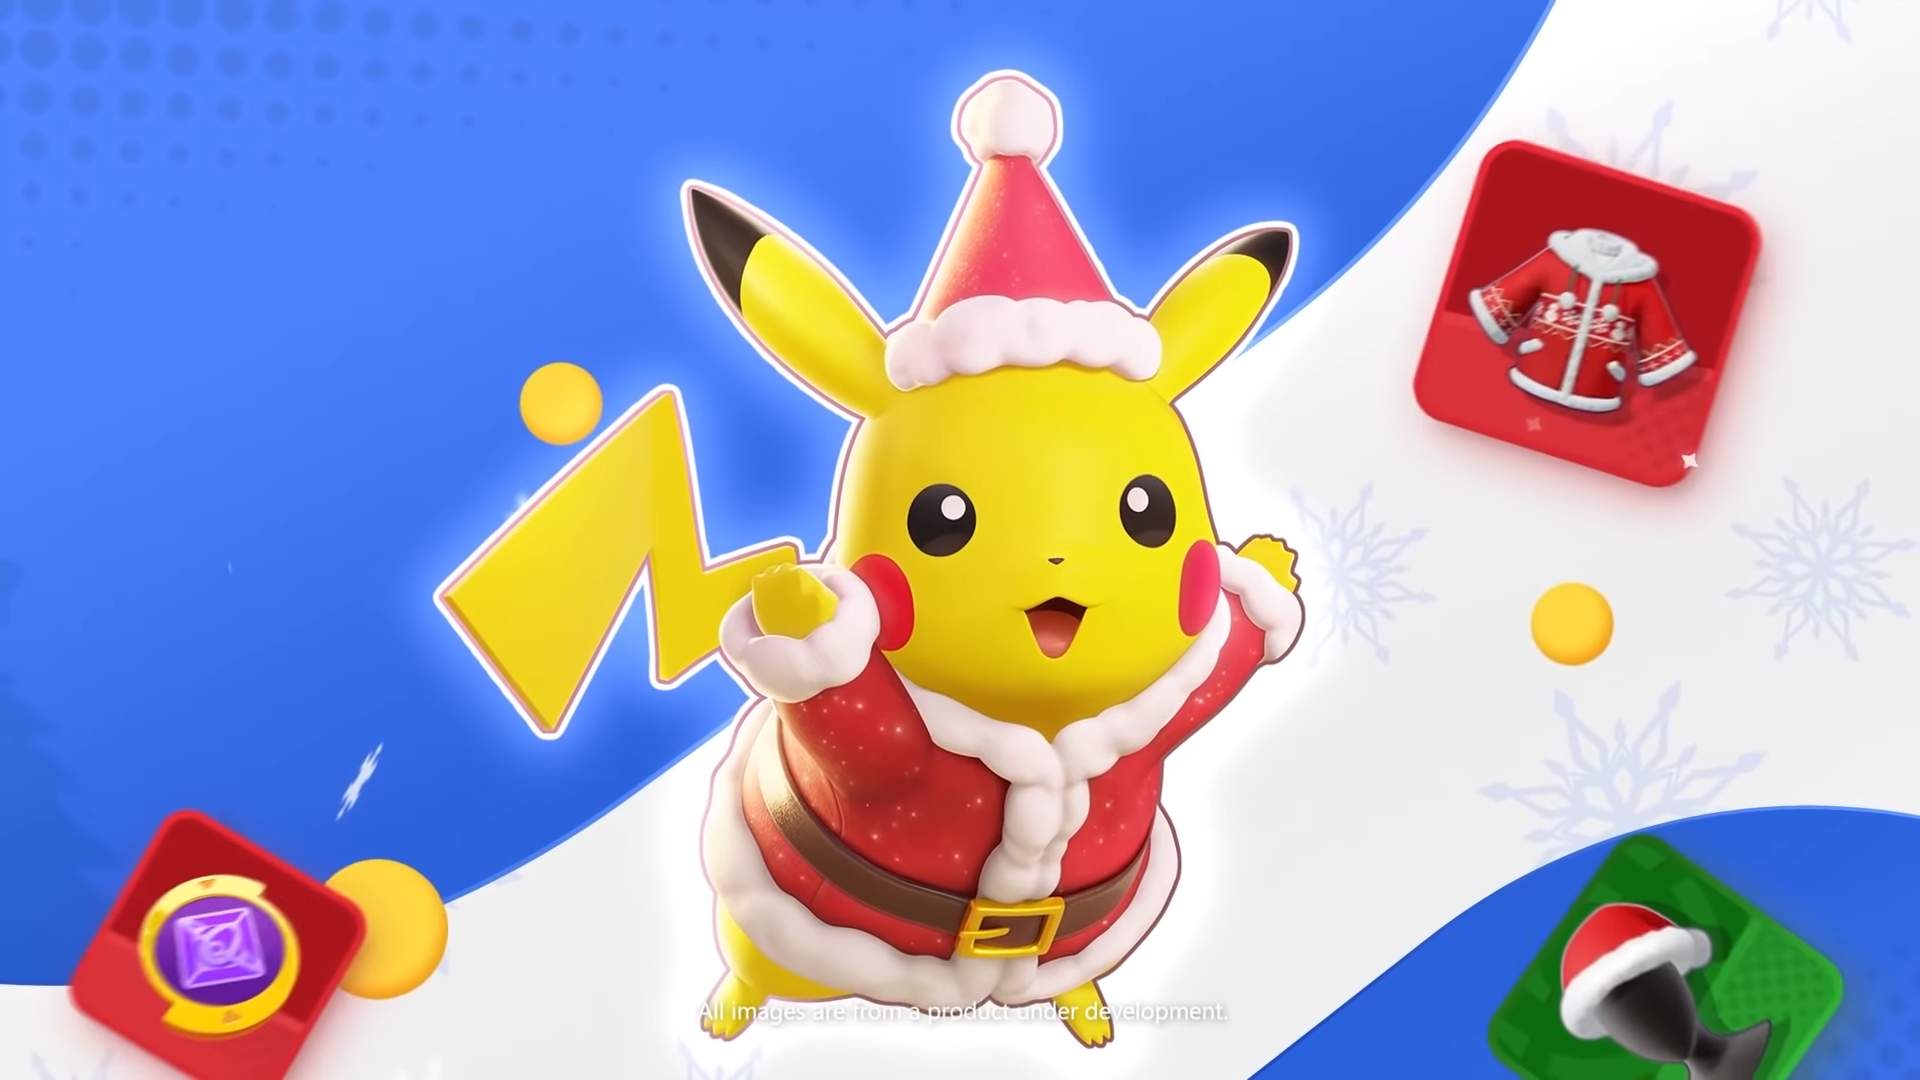 Pokémon Go trará todos os Pikachus especiais de volta em novo evento